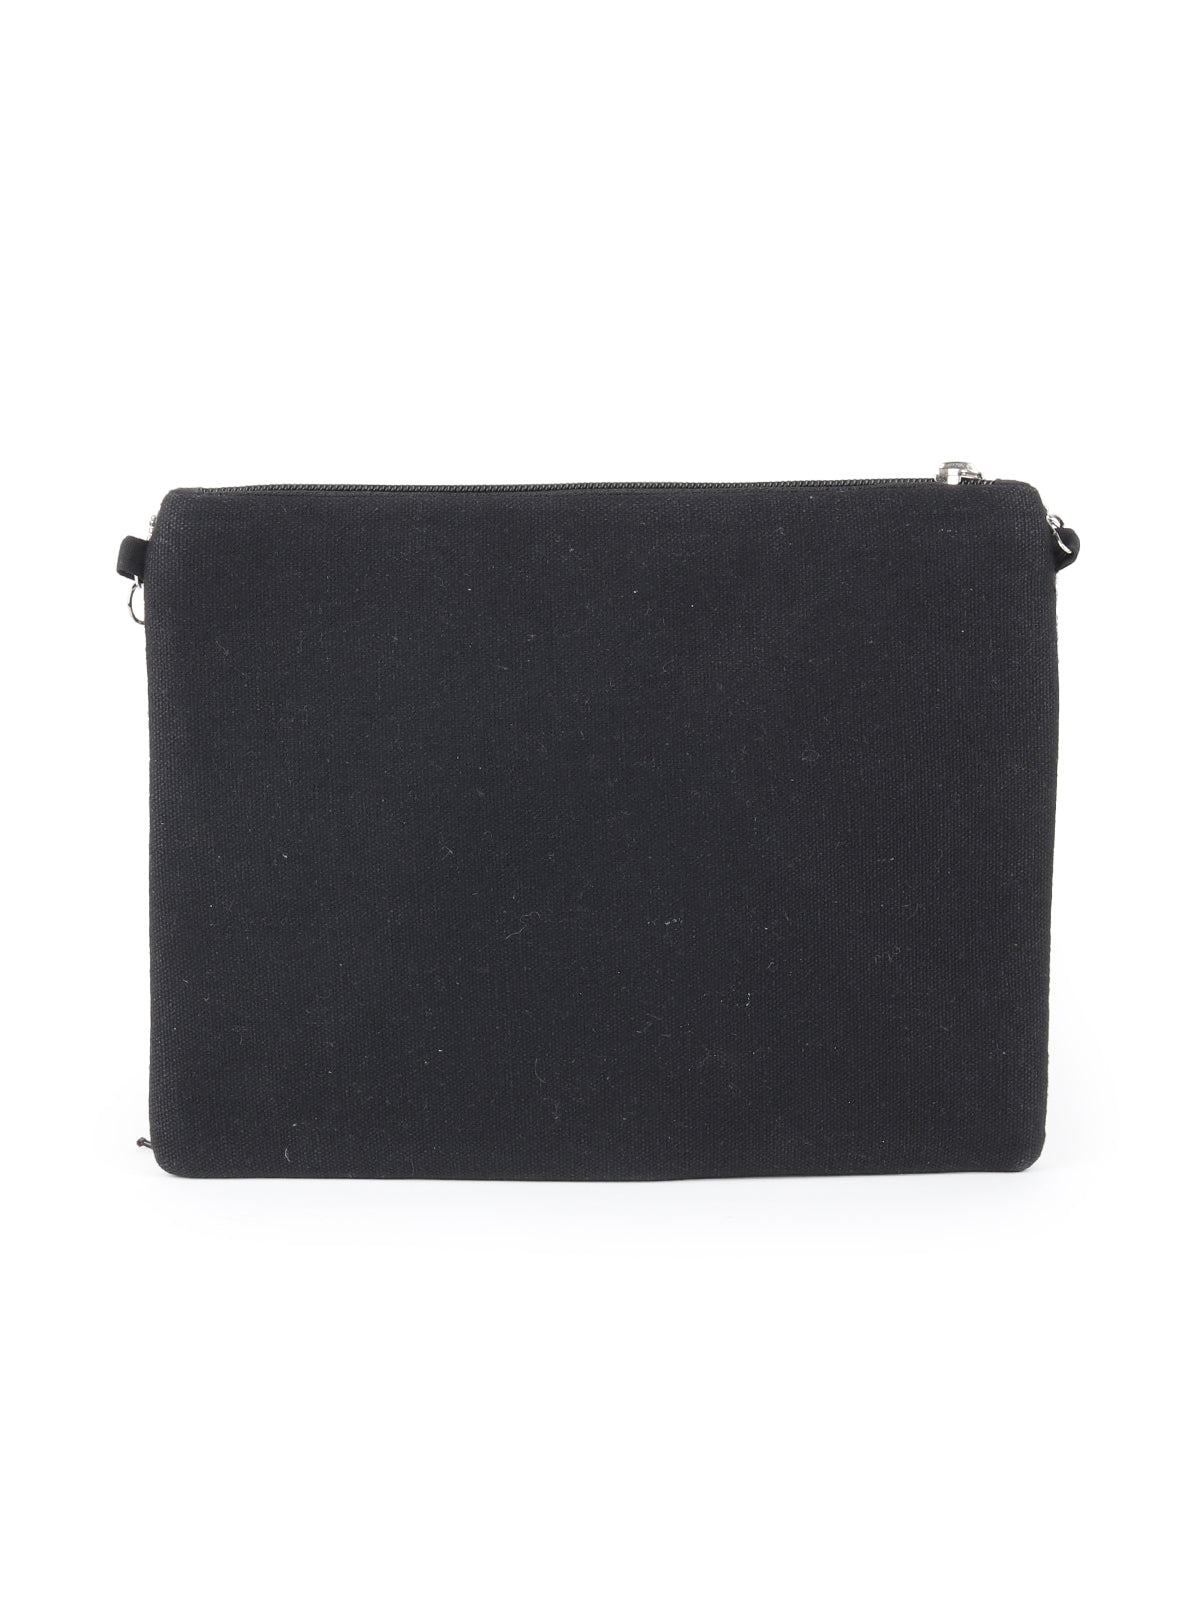 Odette Black Embellished Clutch Bag For Women